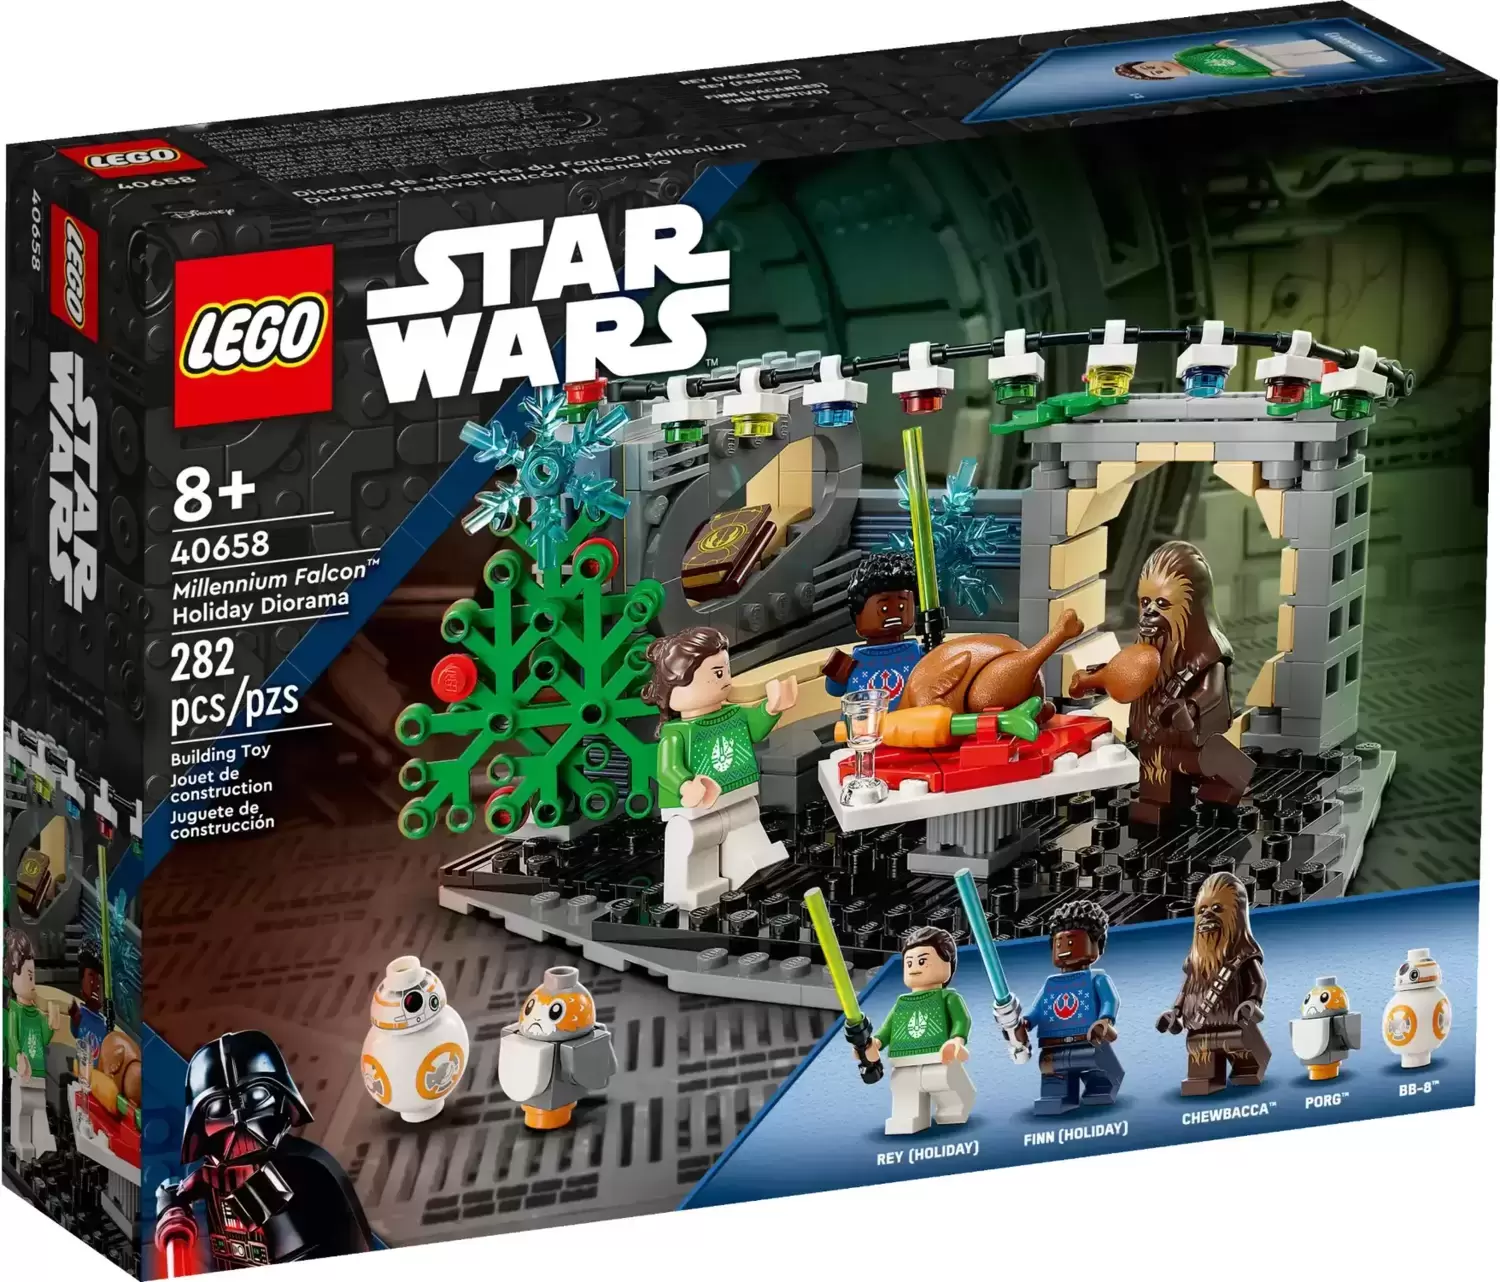 LEGO Star Wars - Millennium Falcon Holiday Diorama